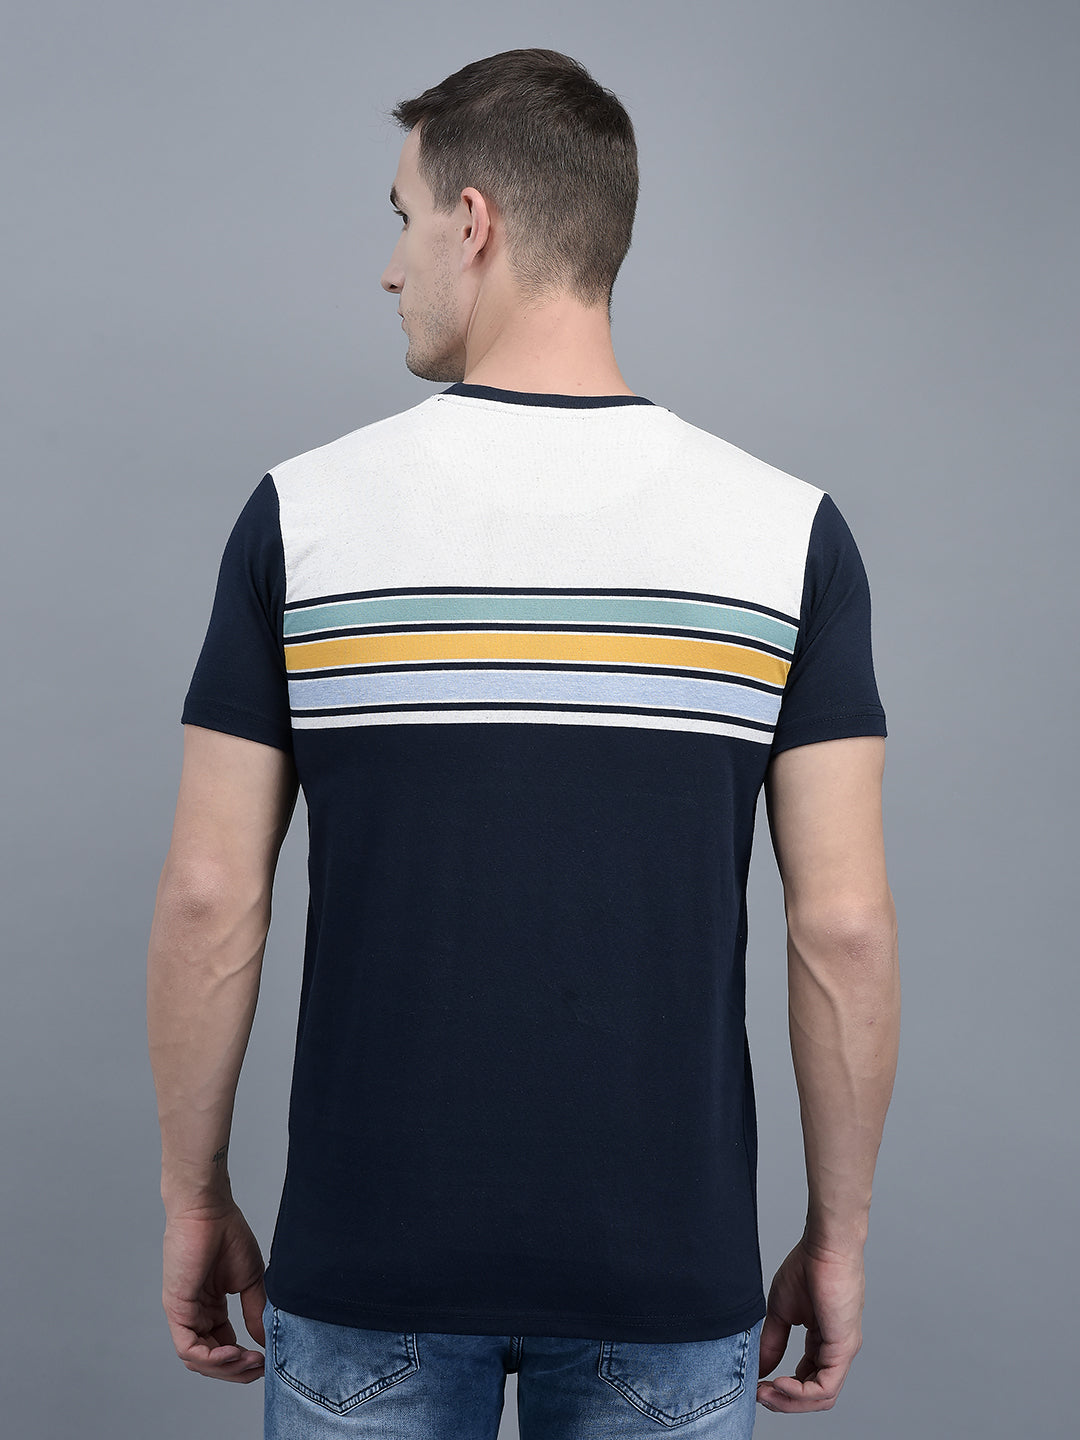 Cobb Navy Blue Striped Round Neck T-Shirt